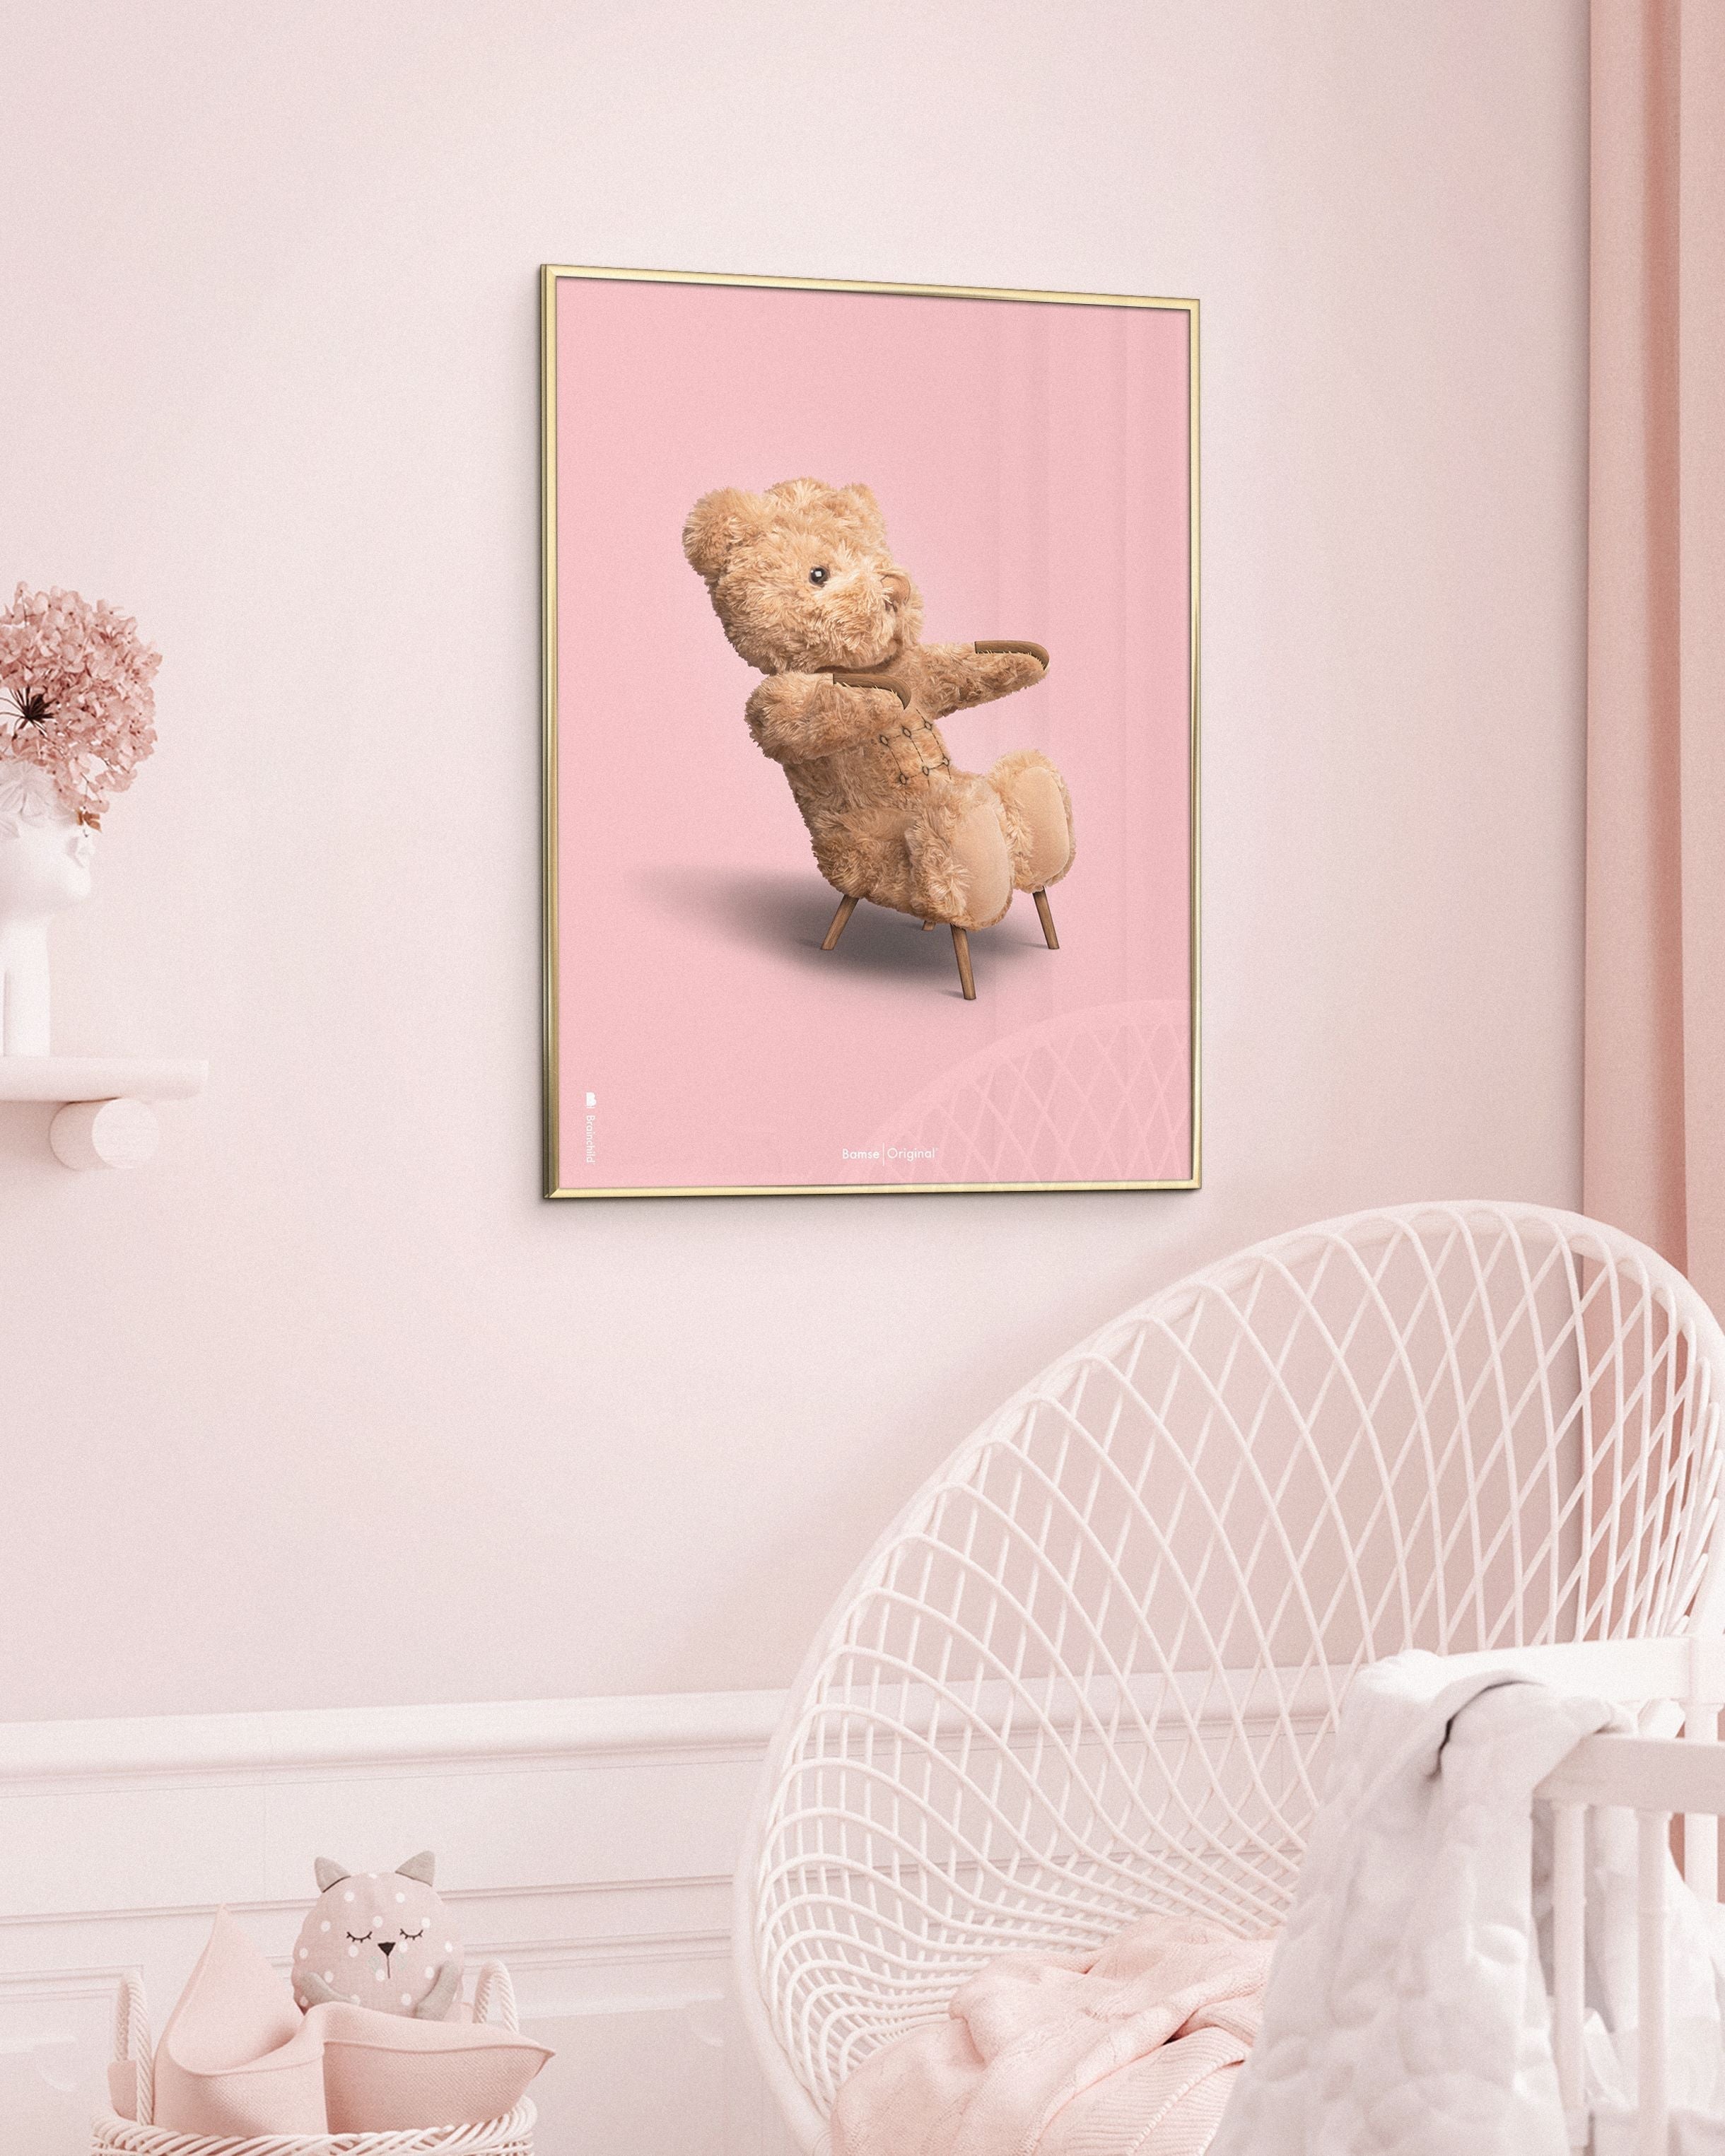 Brainchild Teddy Bear Classic Poster Frame lavet af Dark Wood Ram 70x100 cm, lyserød baggrund